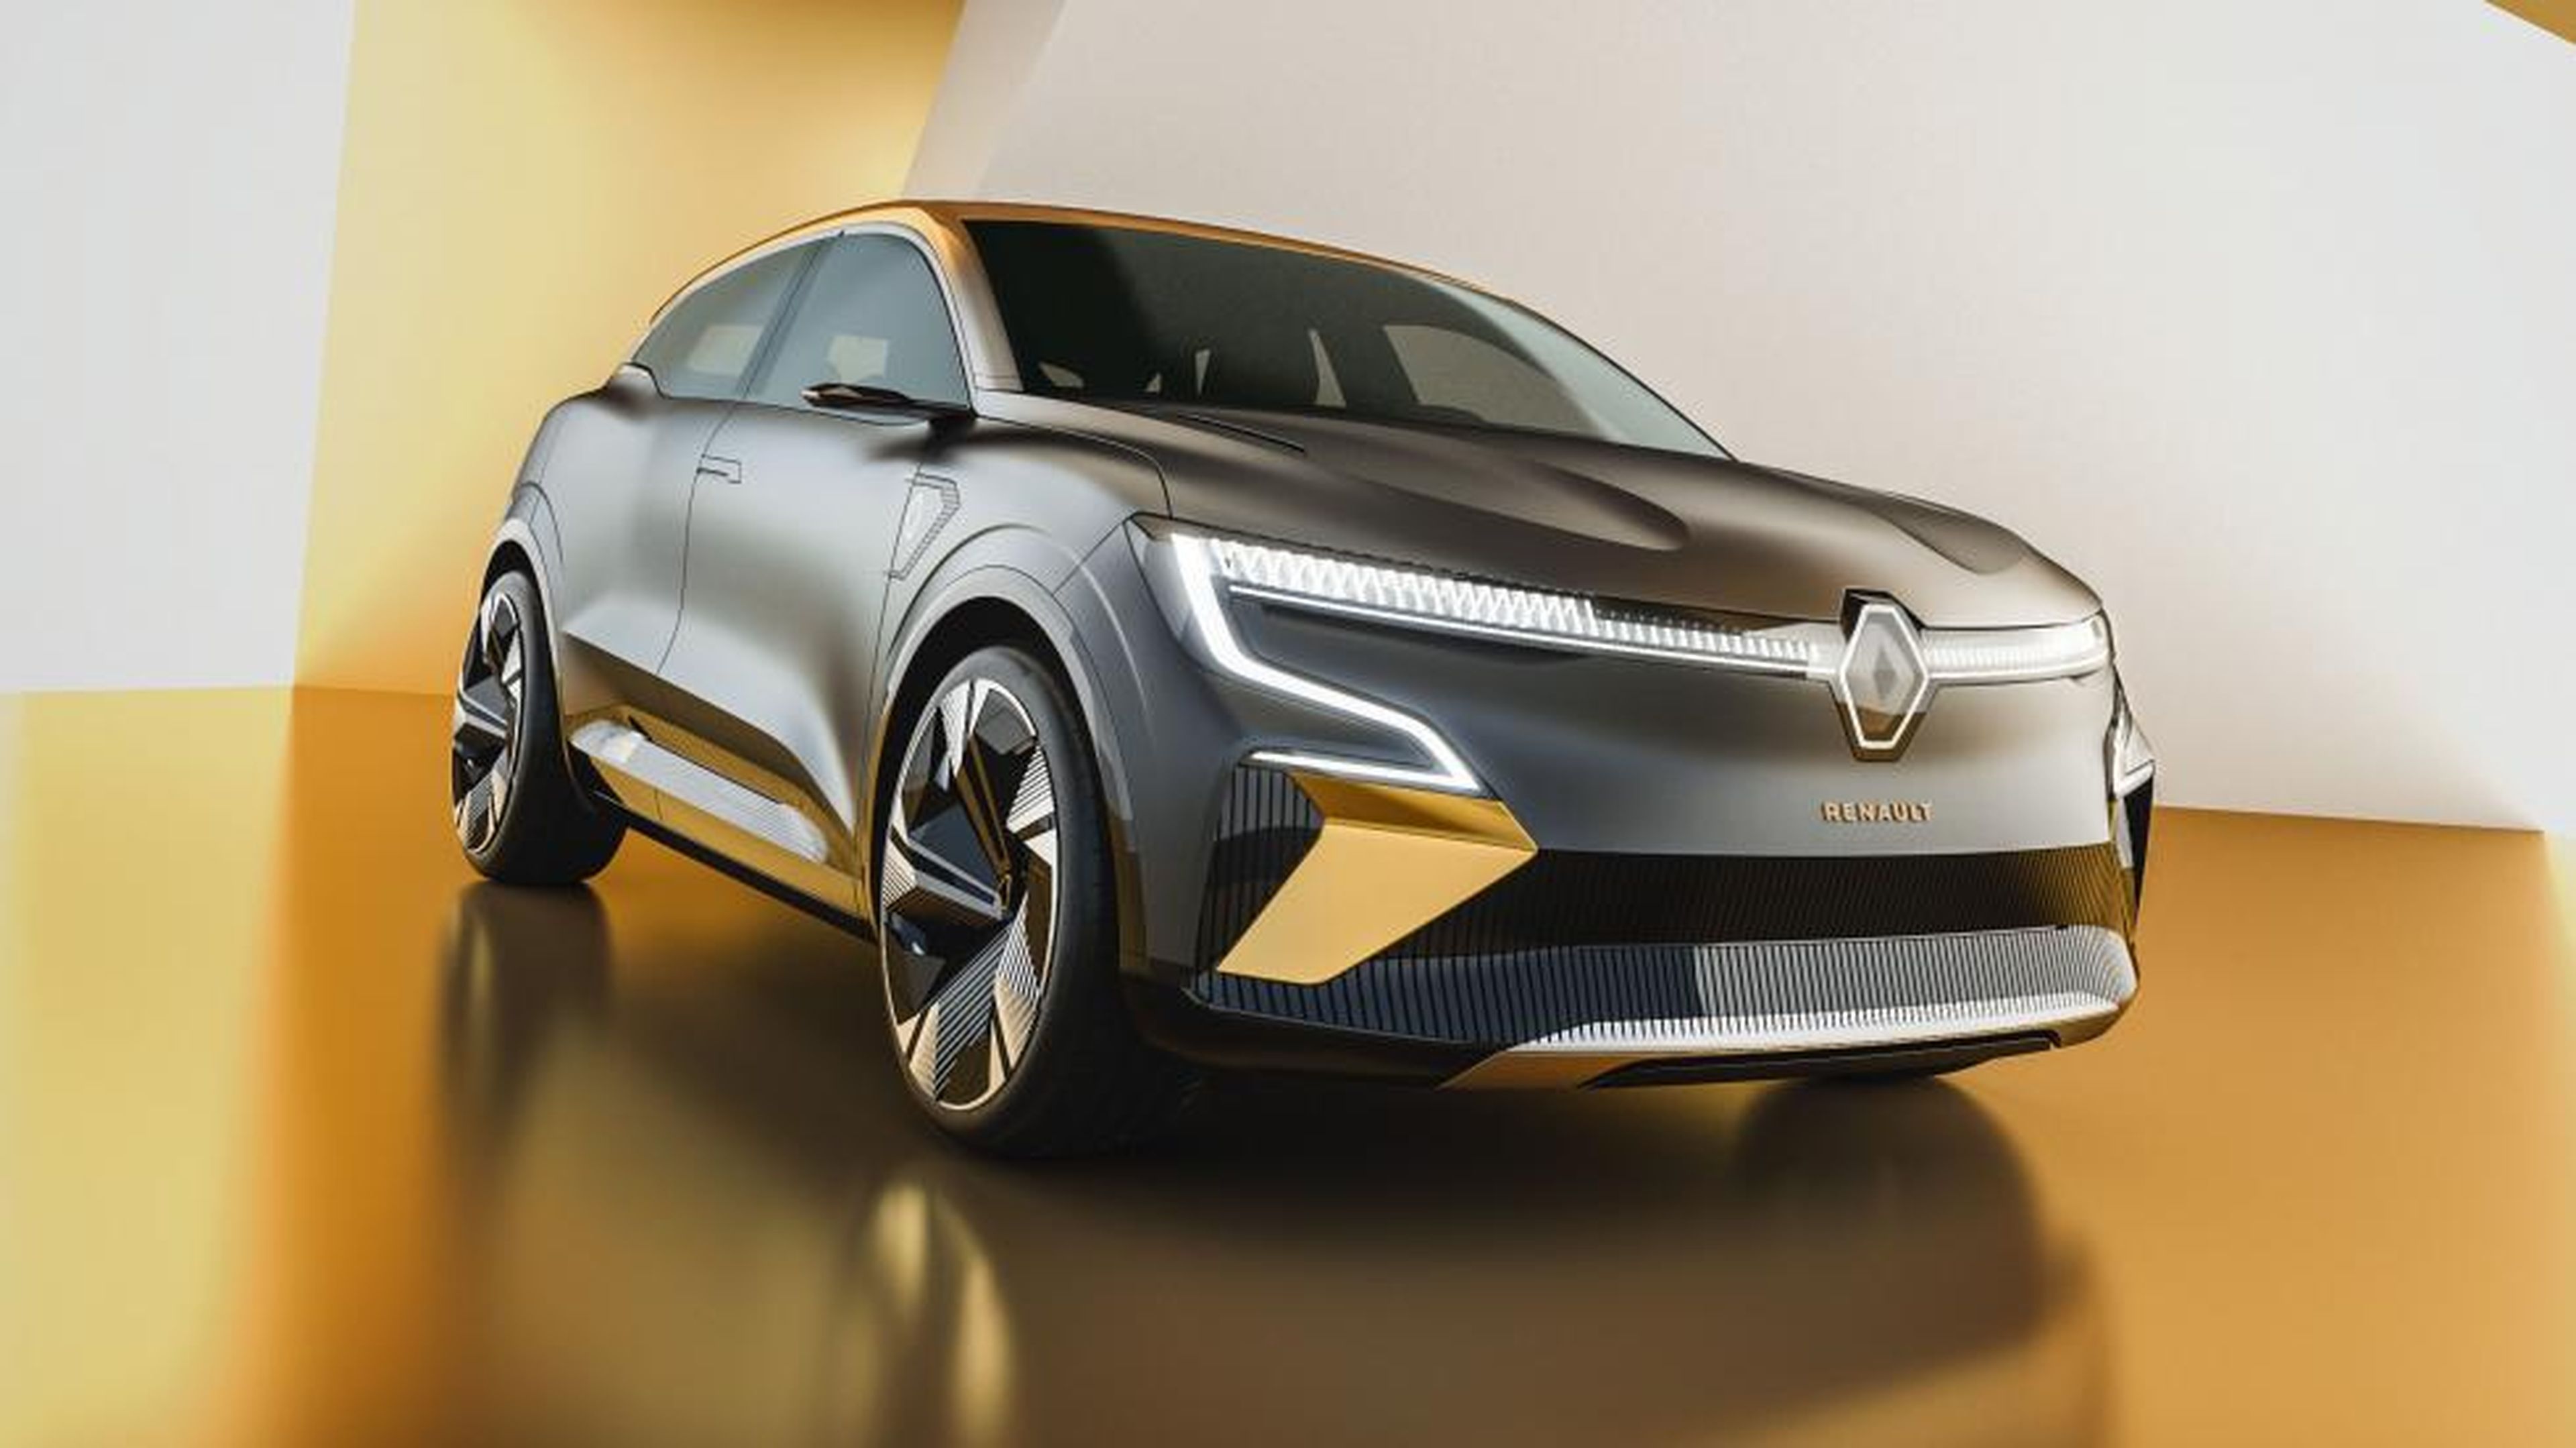 Galería: Renault eVision Concept - Mégane eléctrico